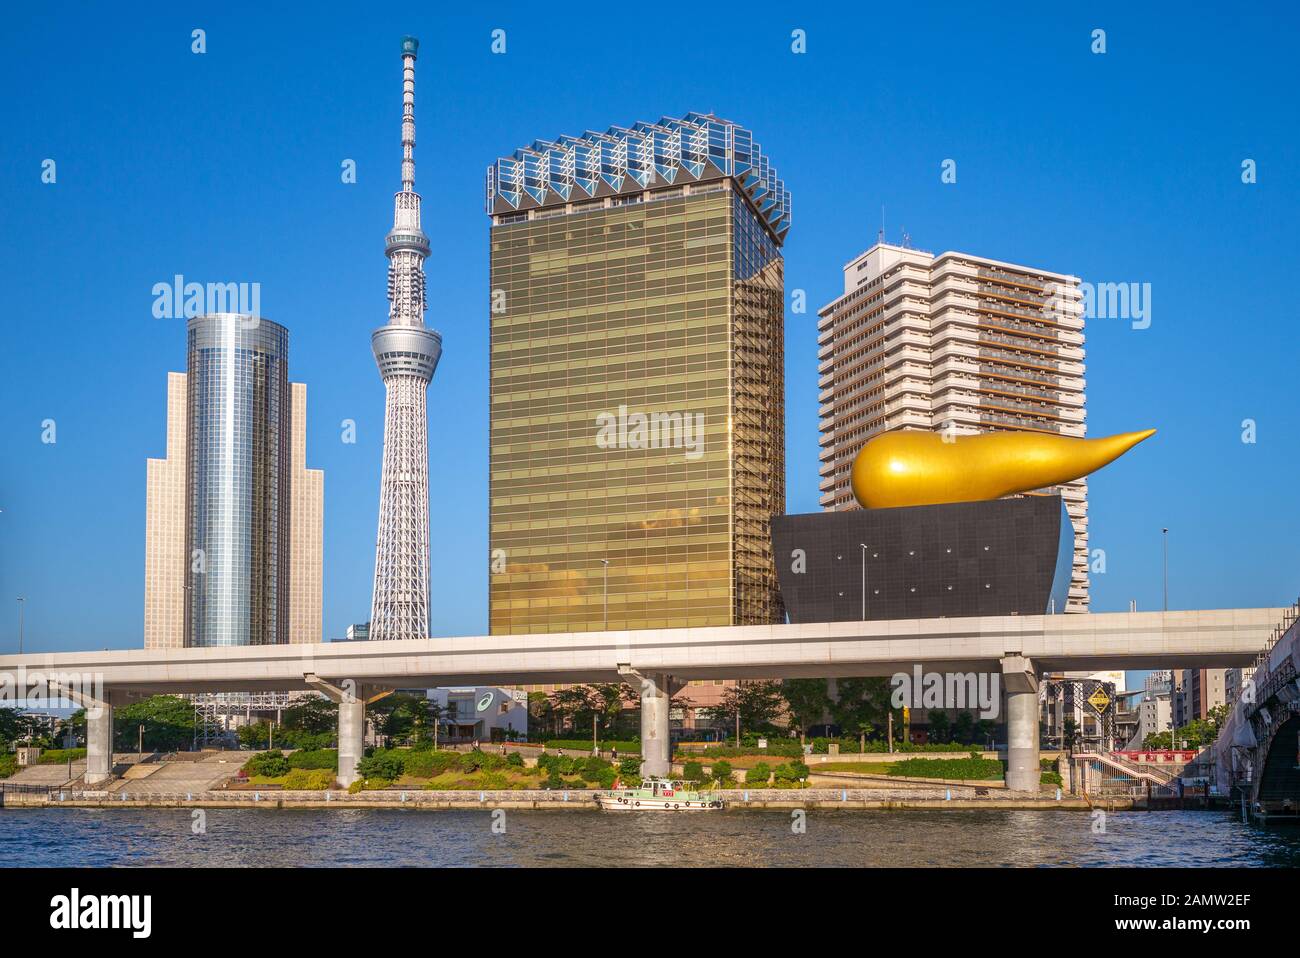 Tokio, Japan - 13. Juni 2019: Asahi Beer Hall, entworfen vom französischen Designer Philippe Starck und wurde 1989 am Ufer des Sumida River mit Tok fertiggestellt Stockfoto